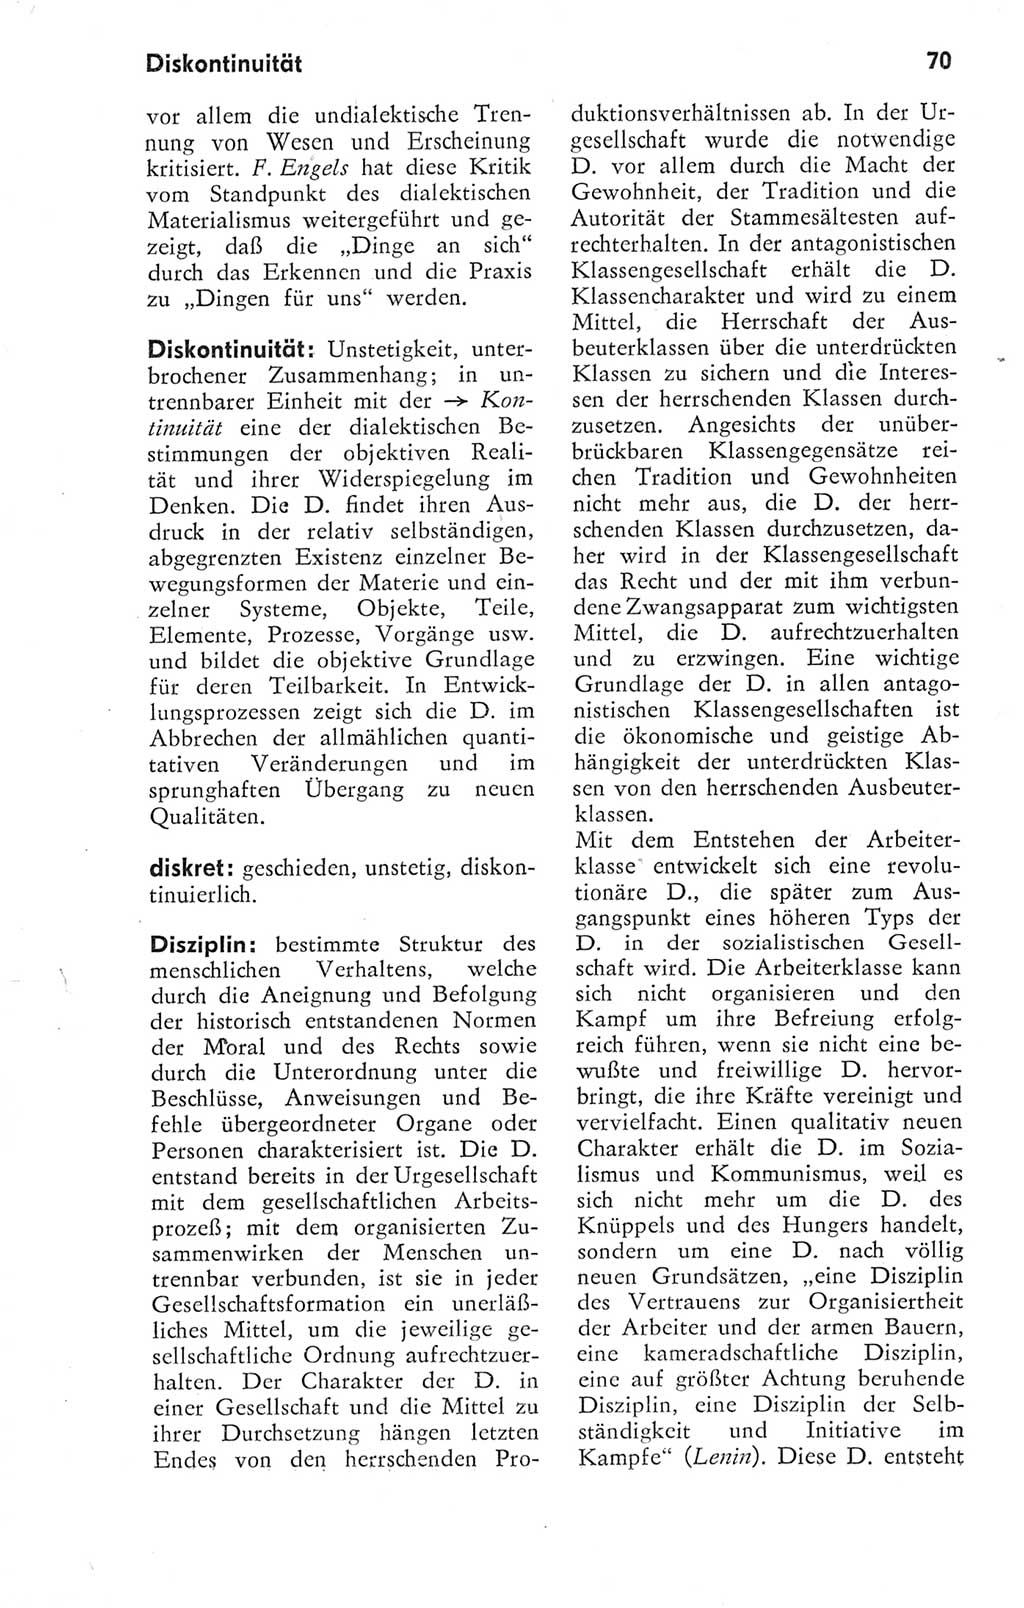 Kleines Wörterbuch der marxistisch-leninistischen Philosophie [Deutsche Demokratische Republik (DDR)] 1974, Seite 70 (Kl. Wb. ML Phil. DDR 1974, S. 70)